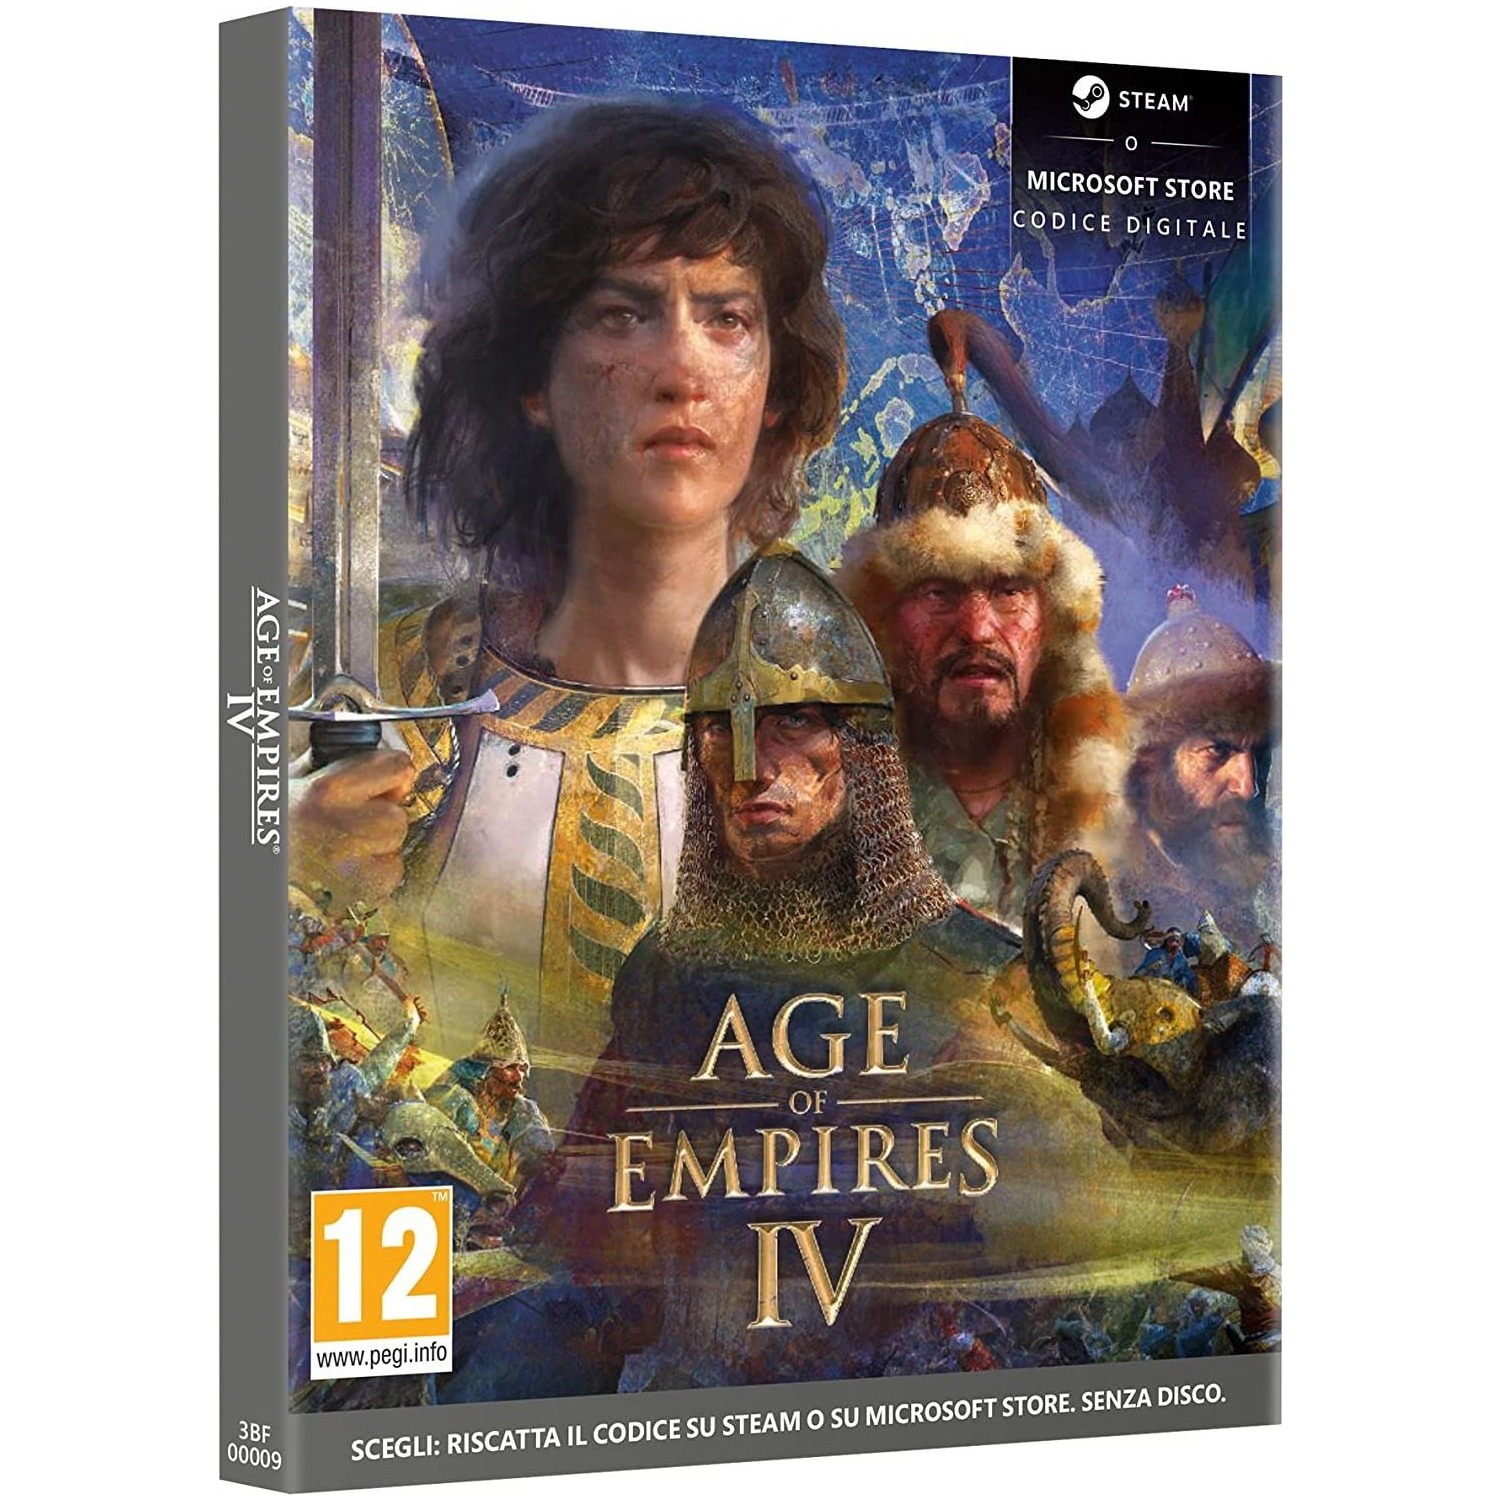 Immagine per Gioco PC Age of Empire 4 (code in a box) da DIMOStore